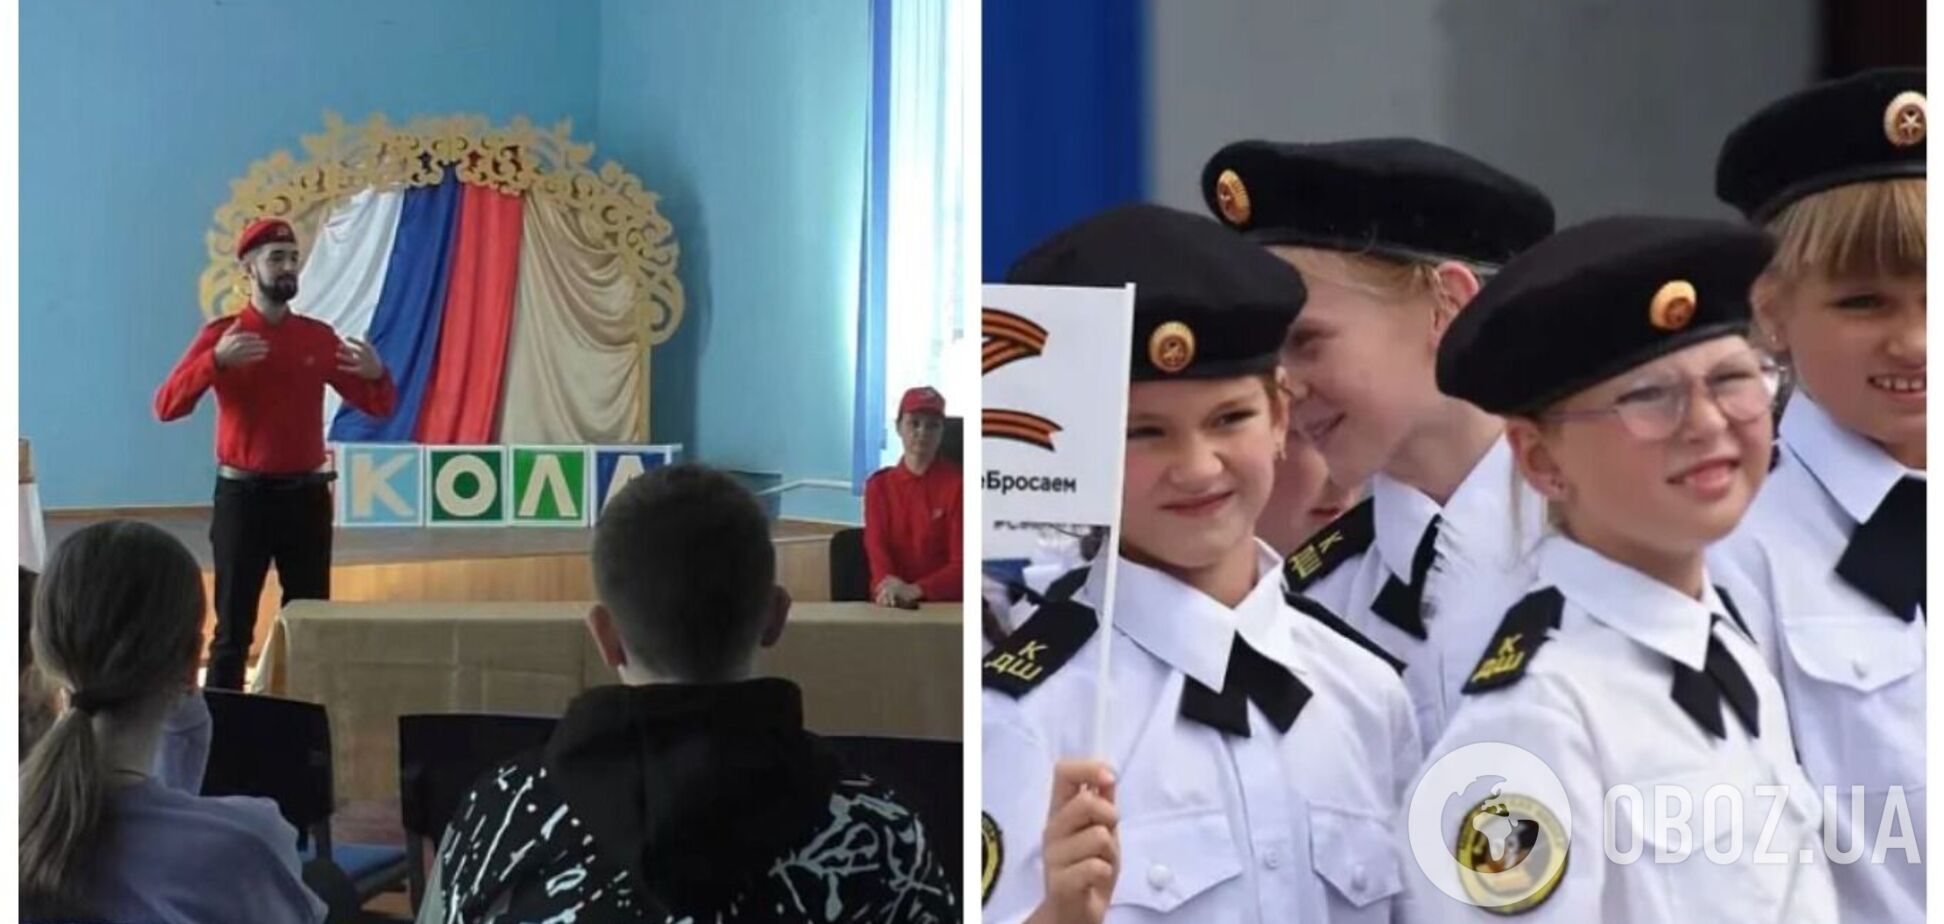 Кремль пытается привлечь украинских детей в 'Юнармию', чтобы использовать их в войне, – эксперты